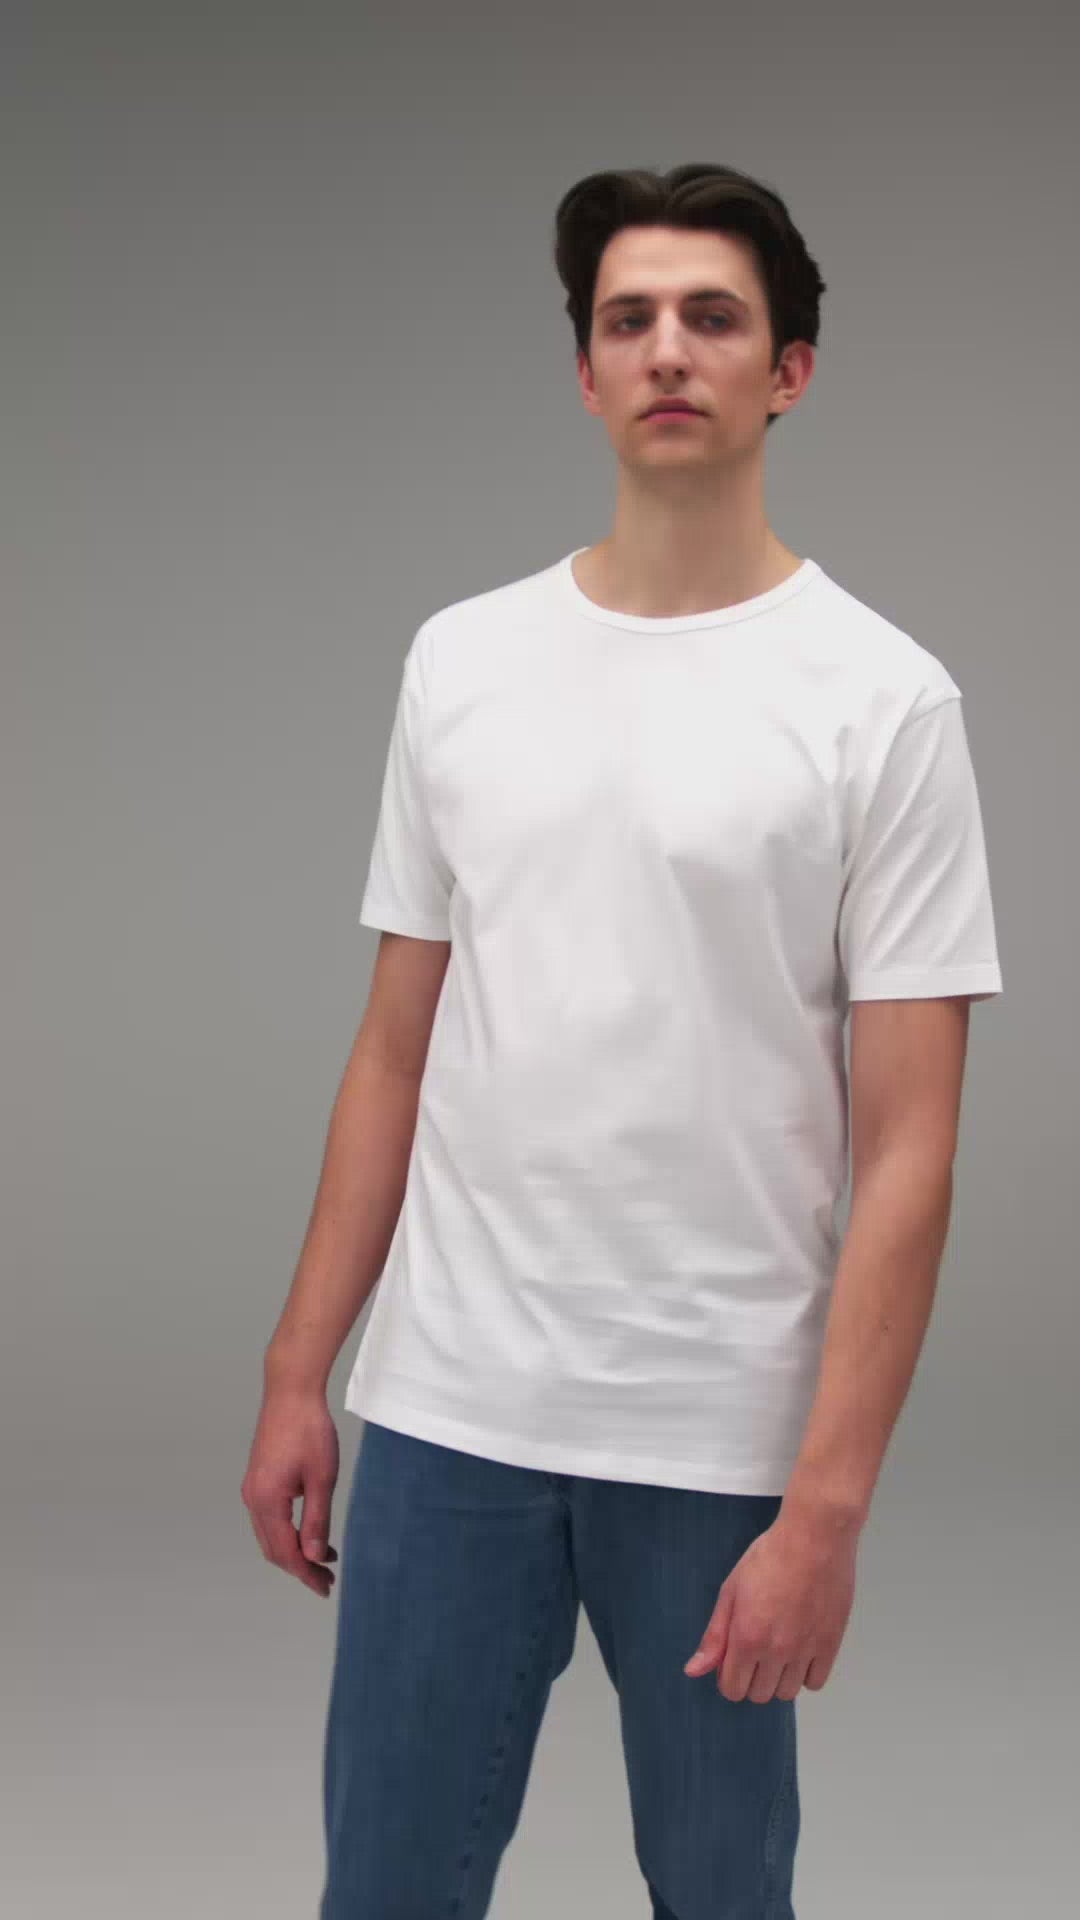 Produktvideo - TALLFITS - Weißes T-Shirt für lange Herren